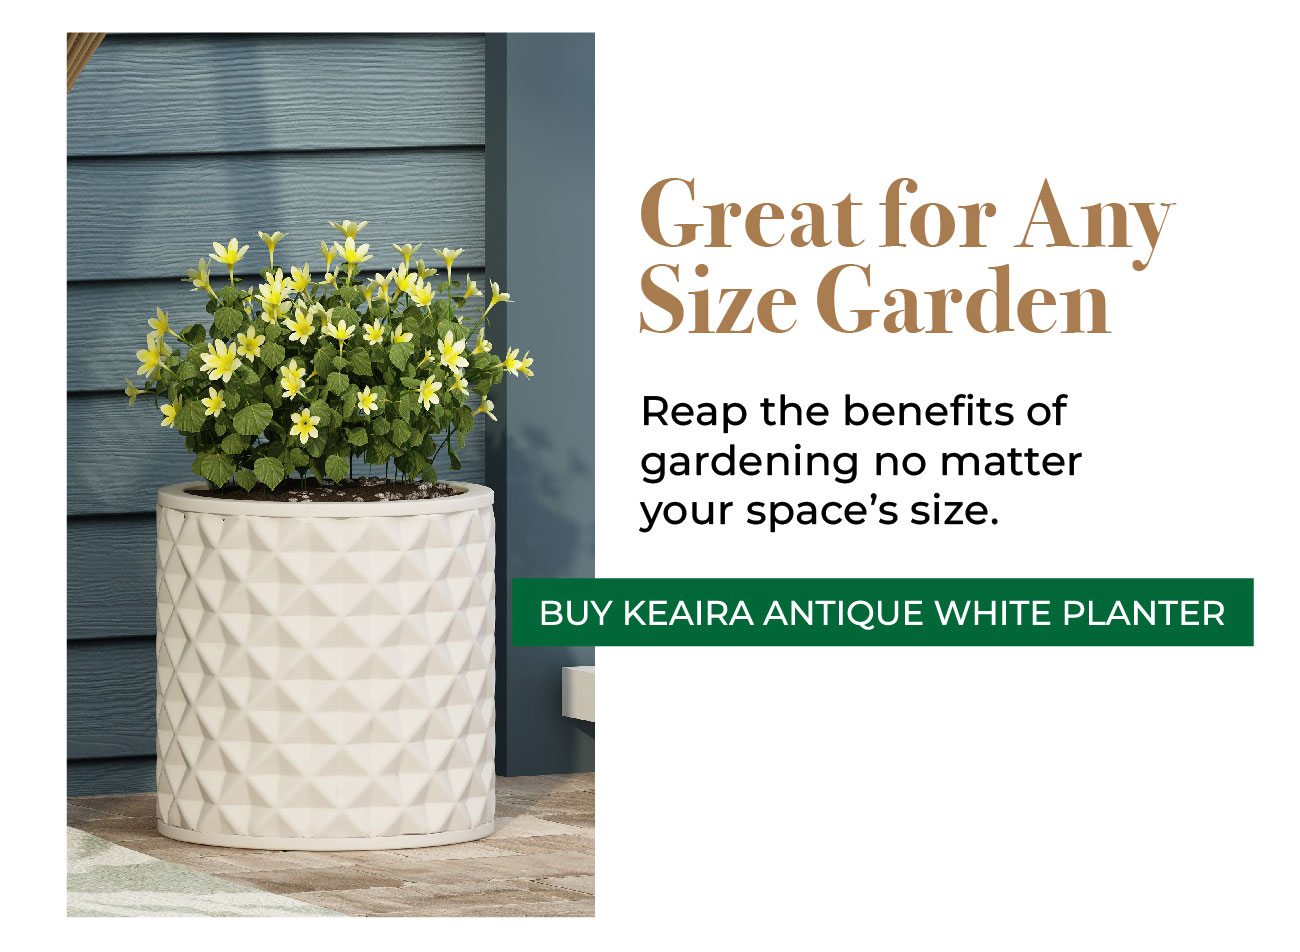 Keaira Antique White Planter